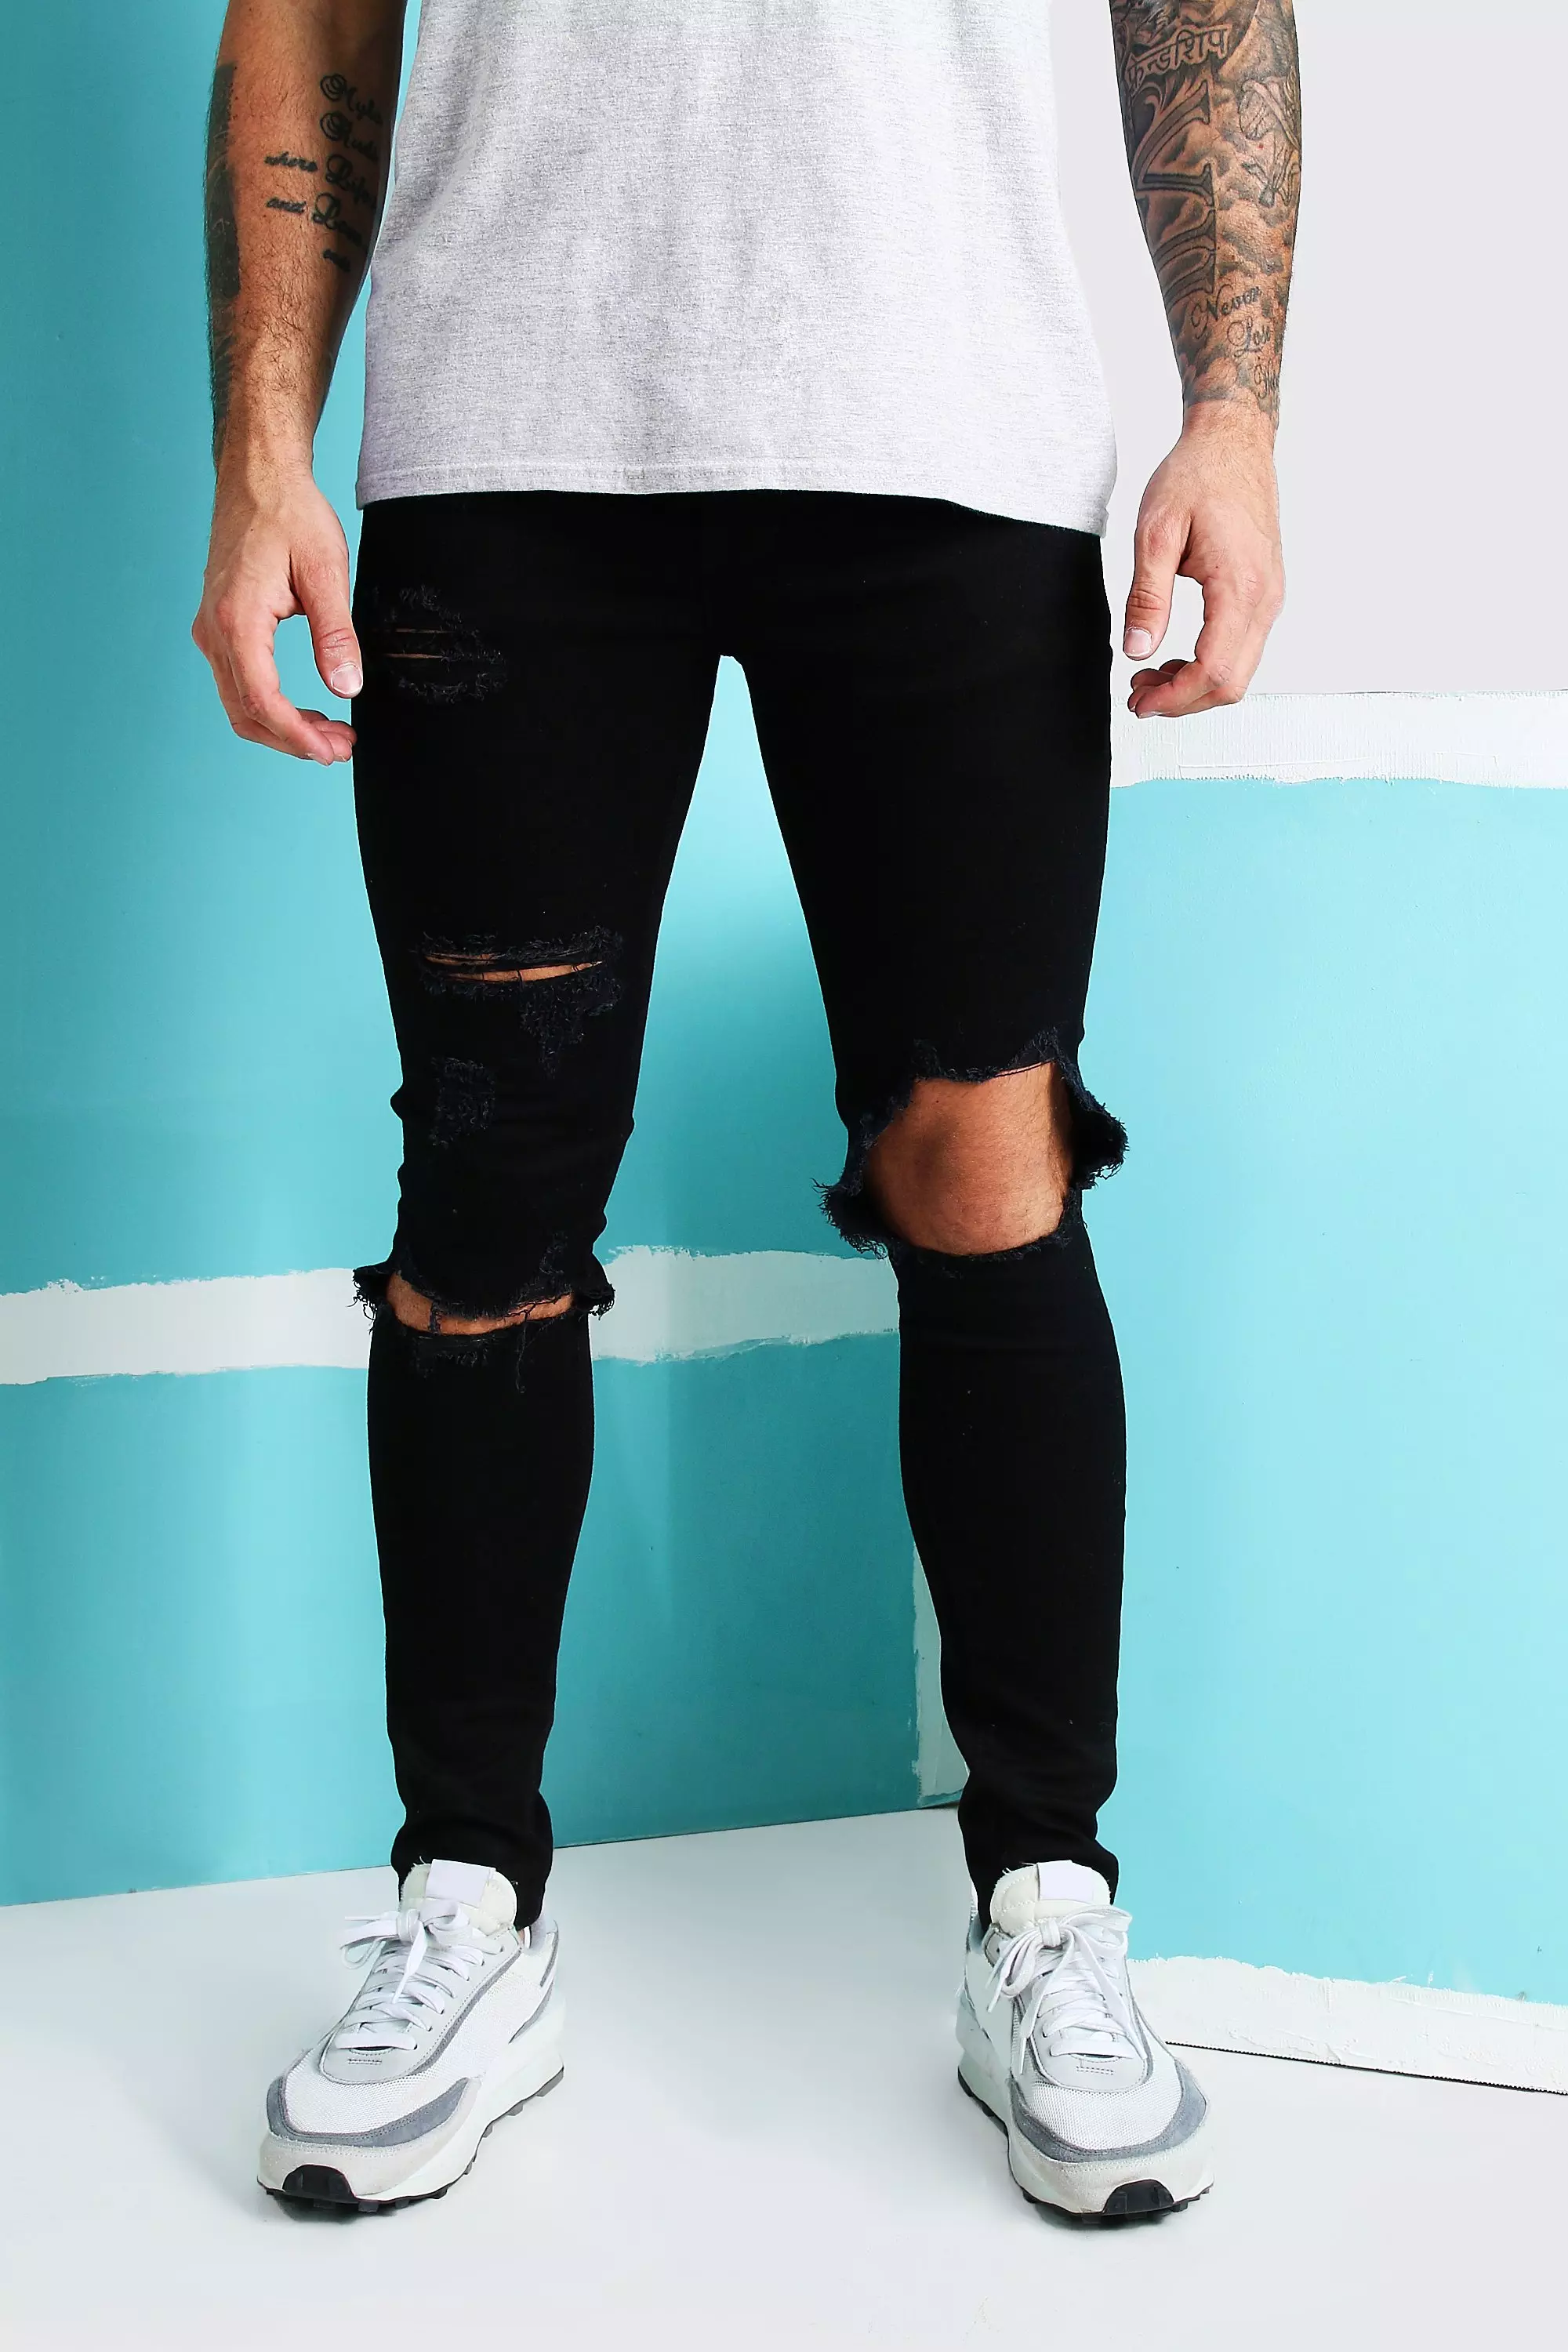 lov fraktion frugter Men's Super Skinny Blow Out Ripped Knee Jeans | boohoo